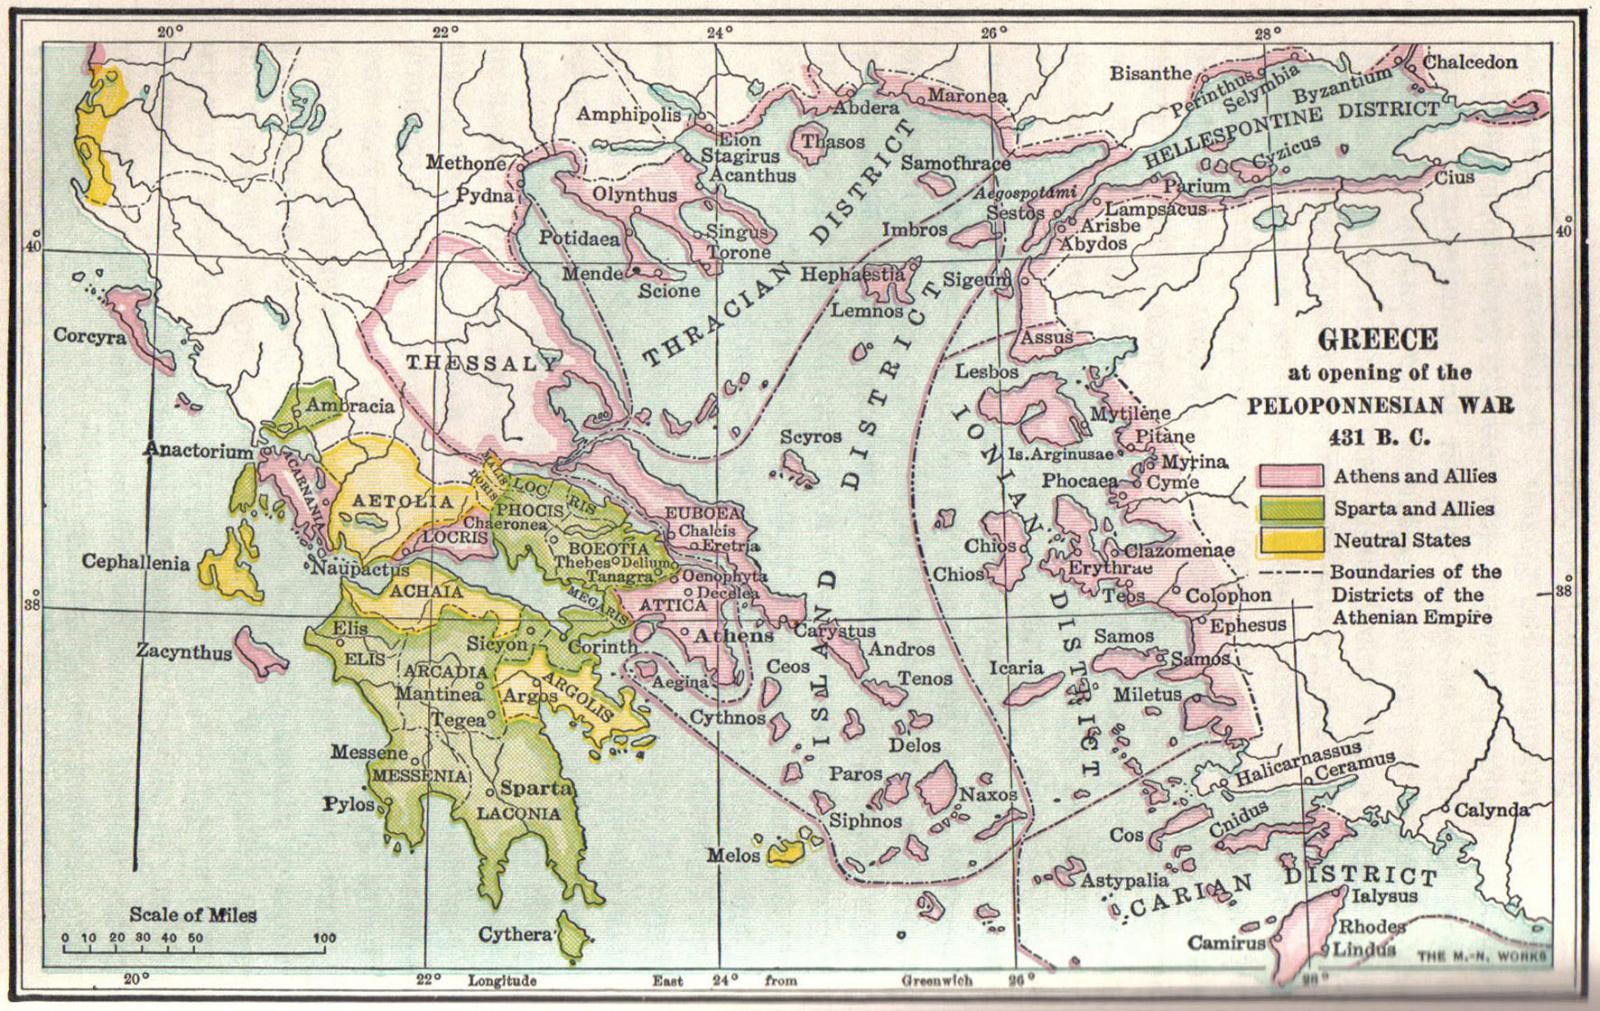 Пелопоннесская война: спартанцы и союзники [жёлтый] против Афин.